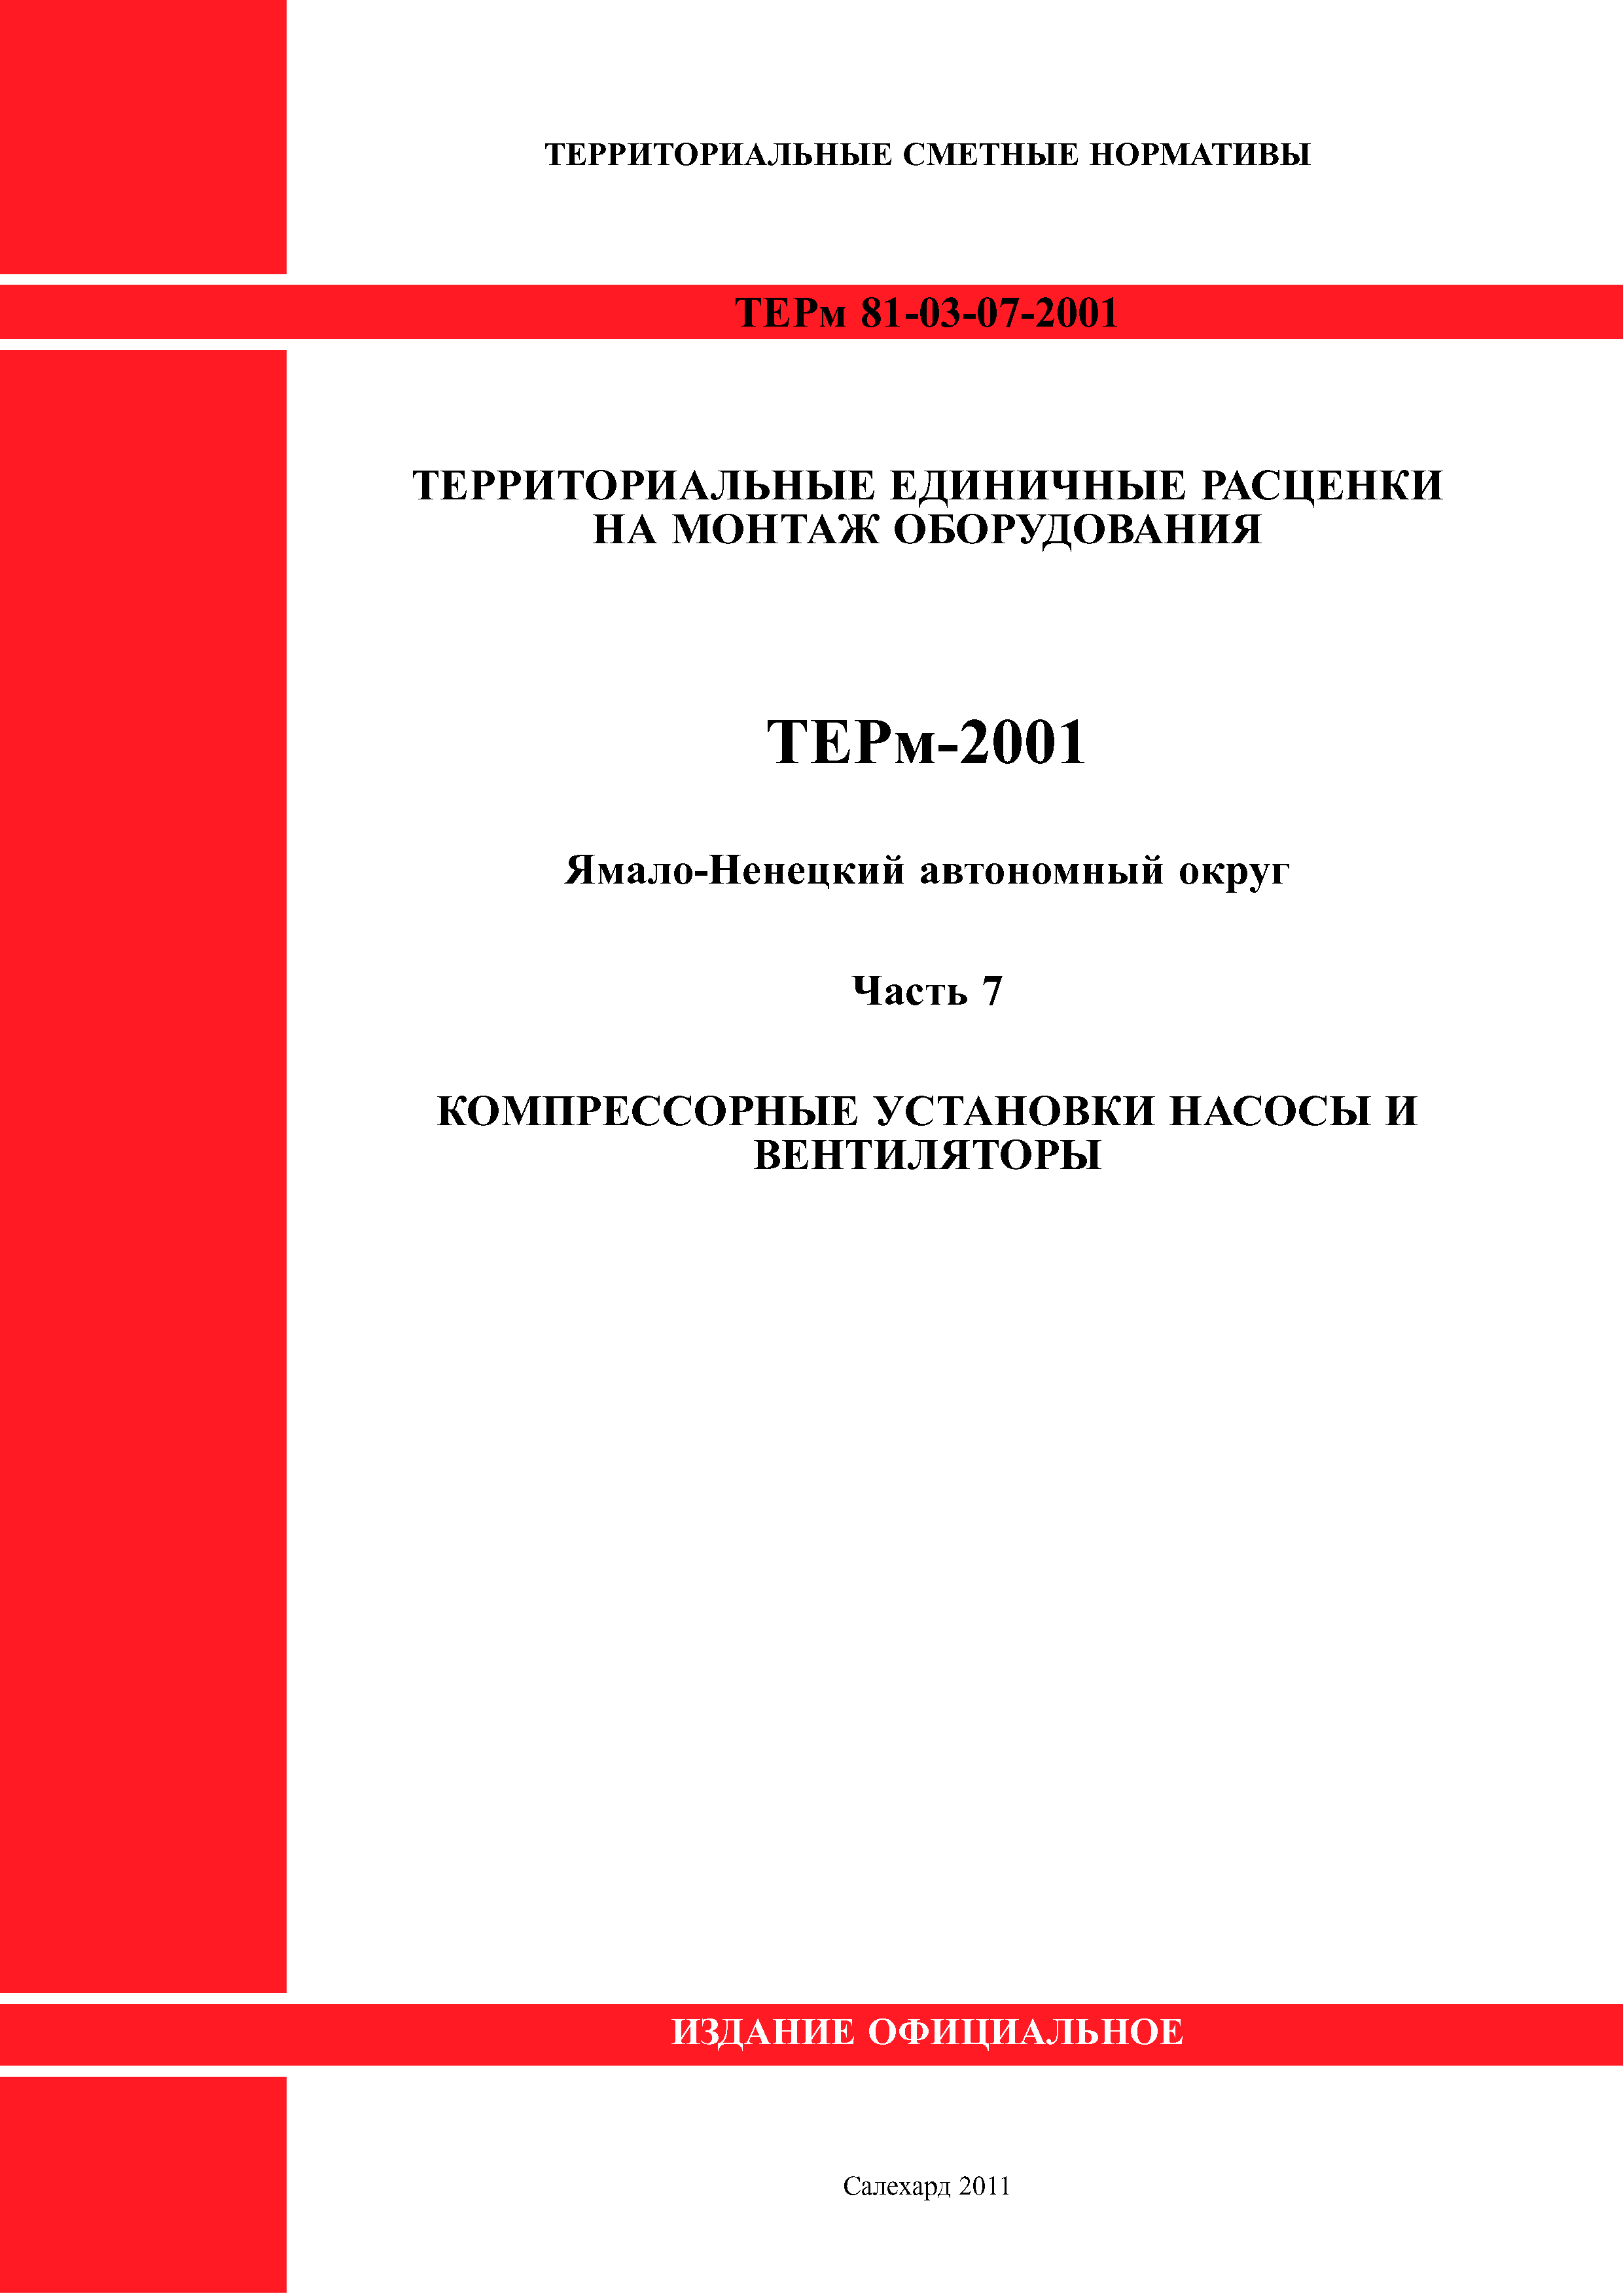 ТЕРм Ямало-Ненецкий автономный округ 07-2001